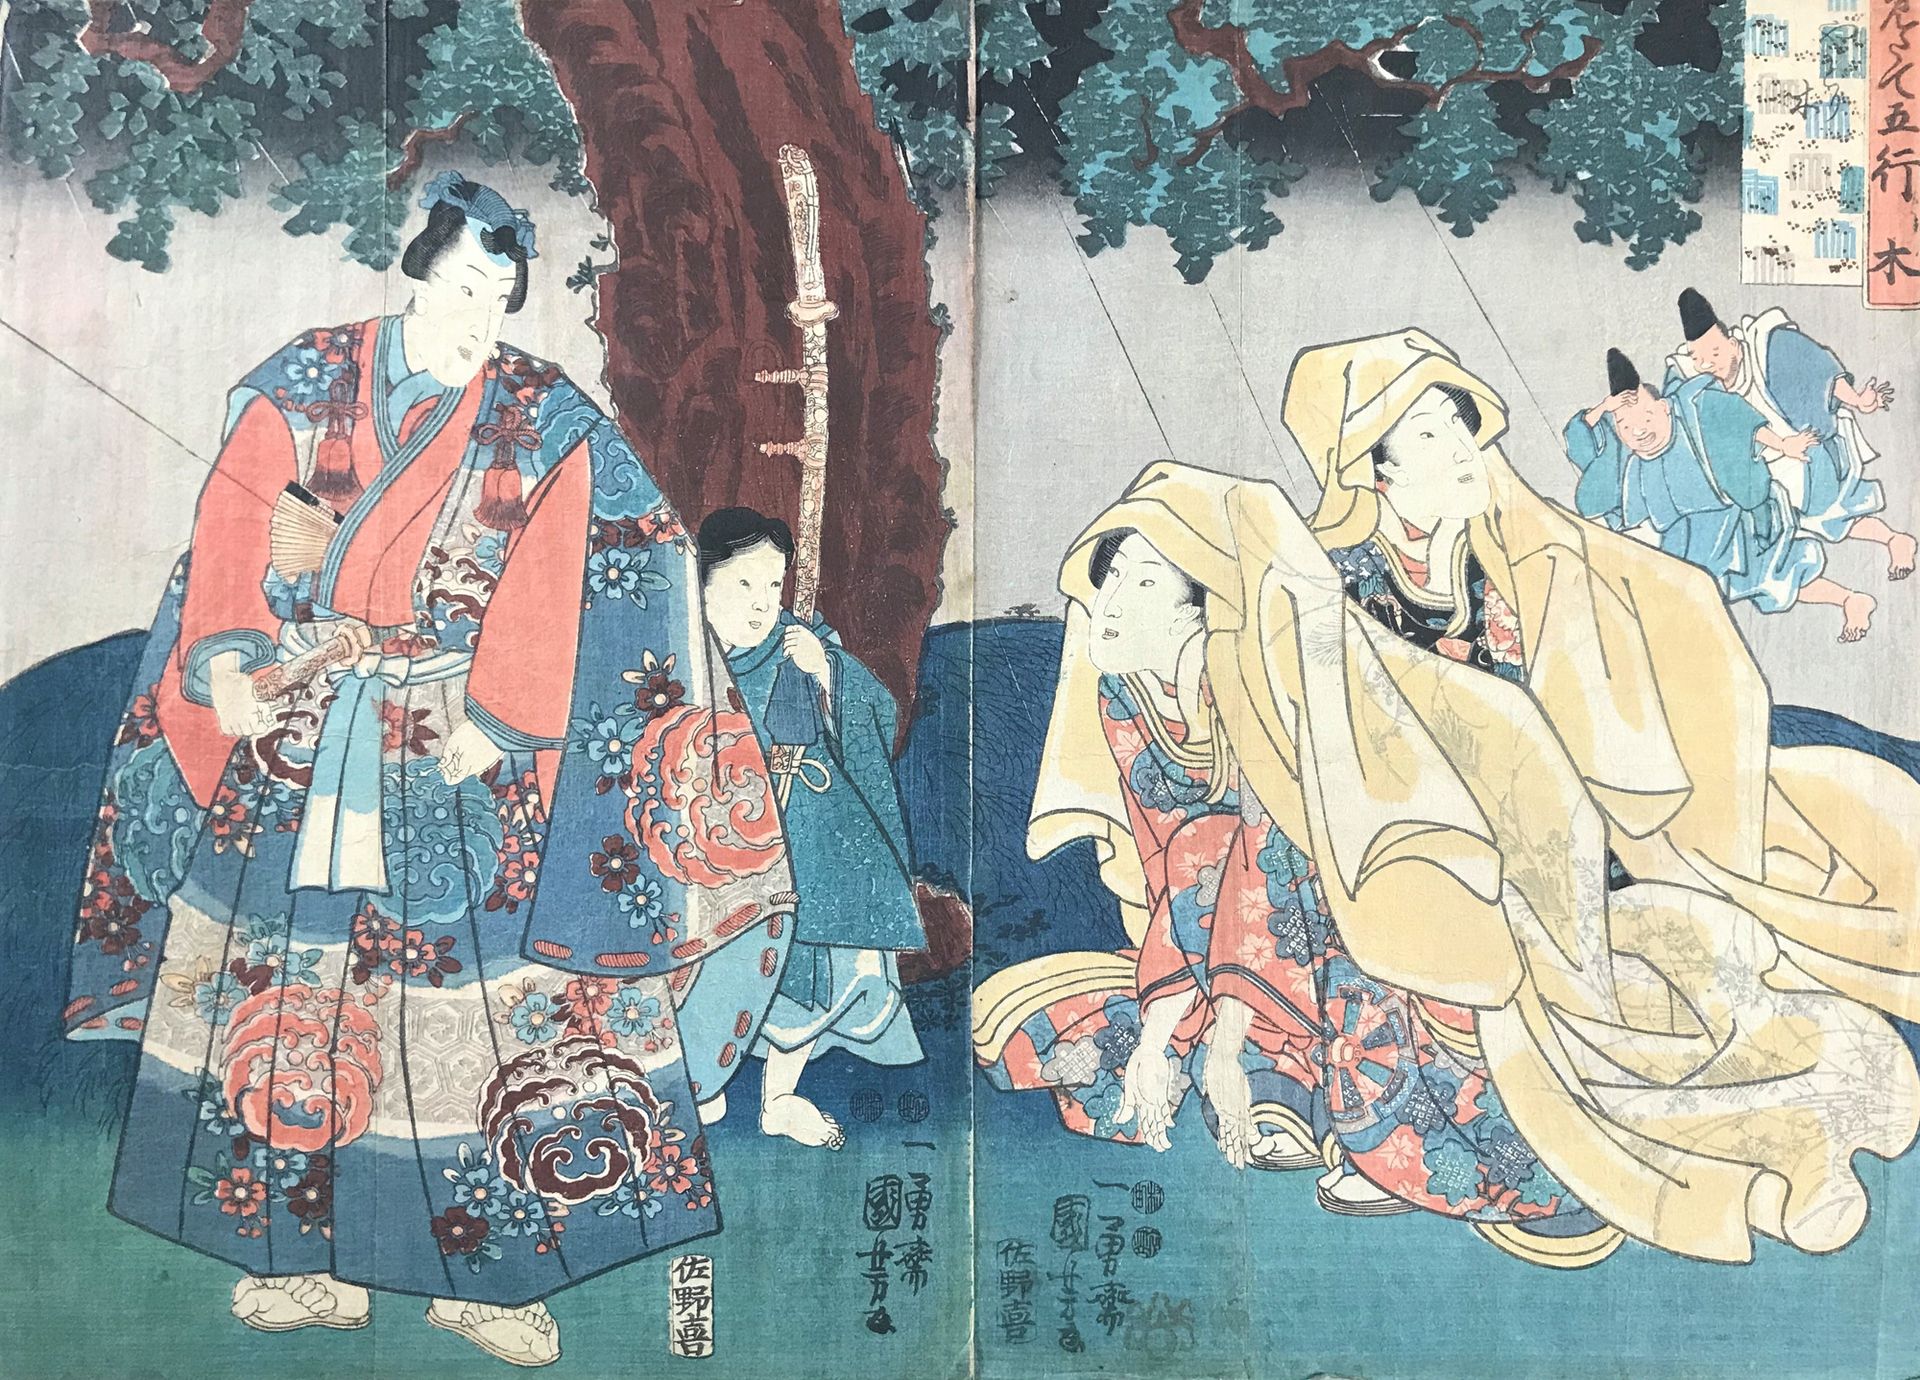 KUNIYOSHI. Wood (ki). Yadorigi. Dyptich. Utagawa KUNIYOSHI.1797-1861

Wood (ki).&hellip;